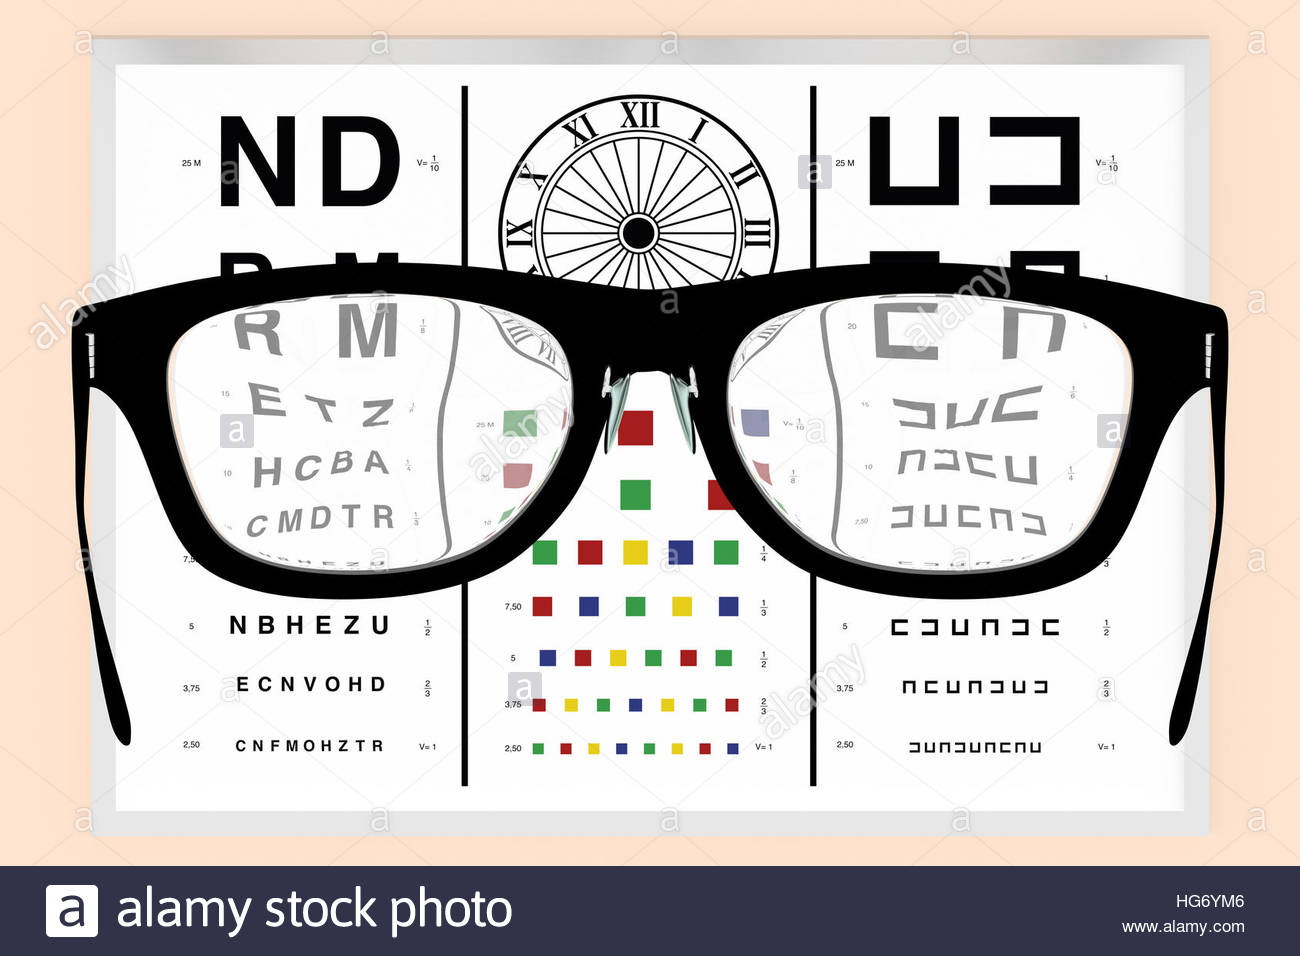 Brille vor einer Vision test zum visuelle Korrektur Dioptrien ...